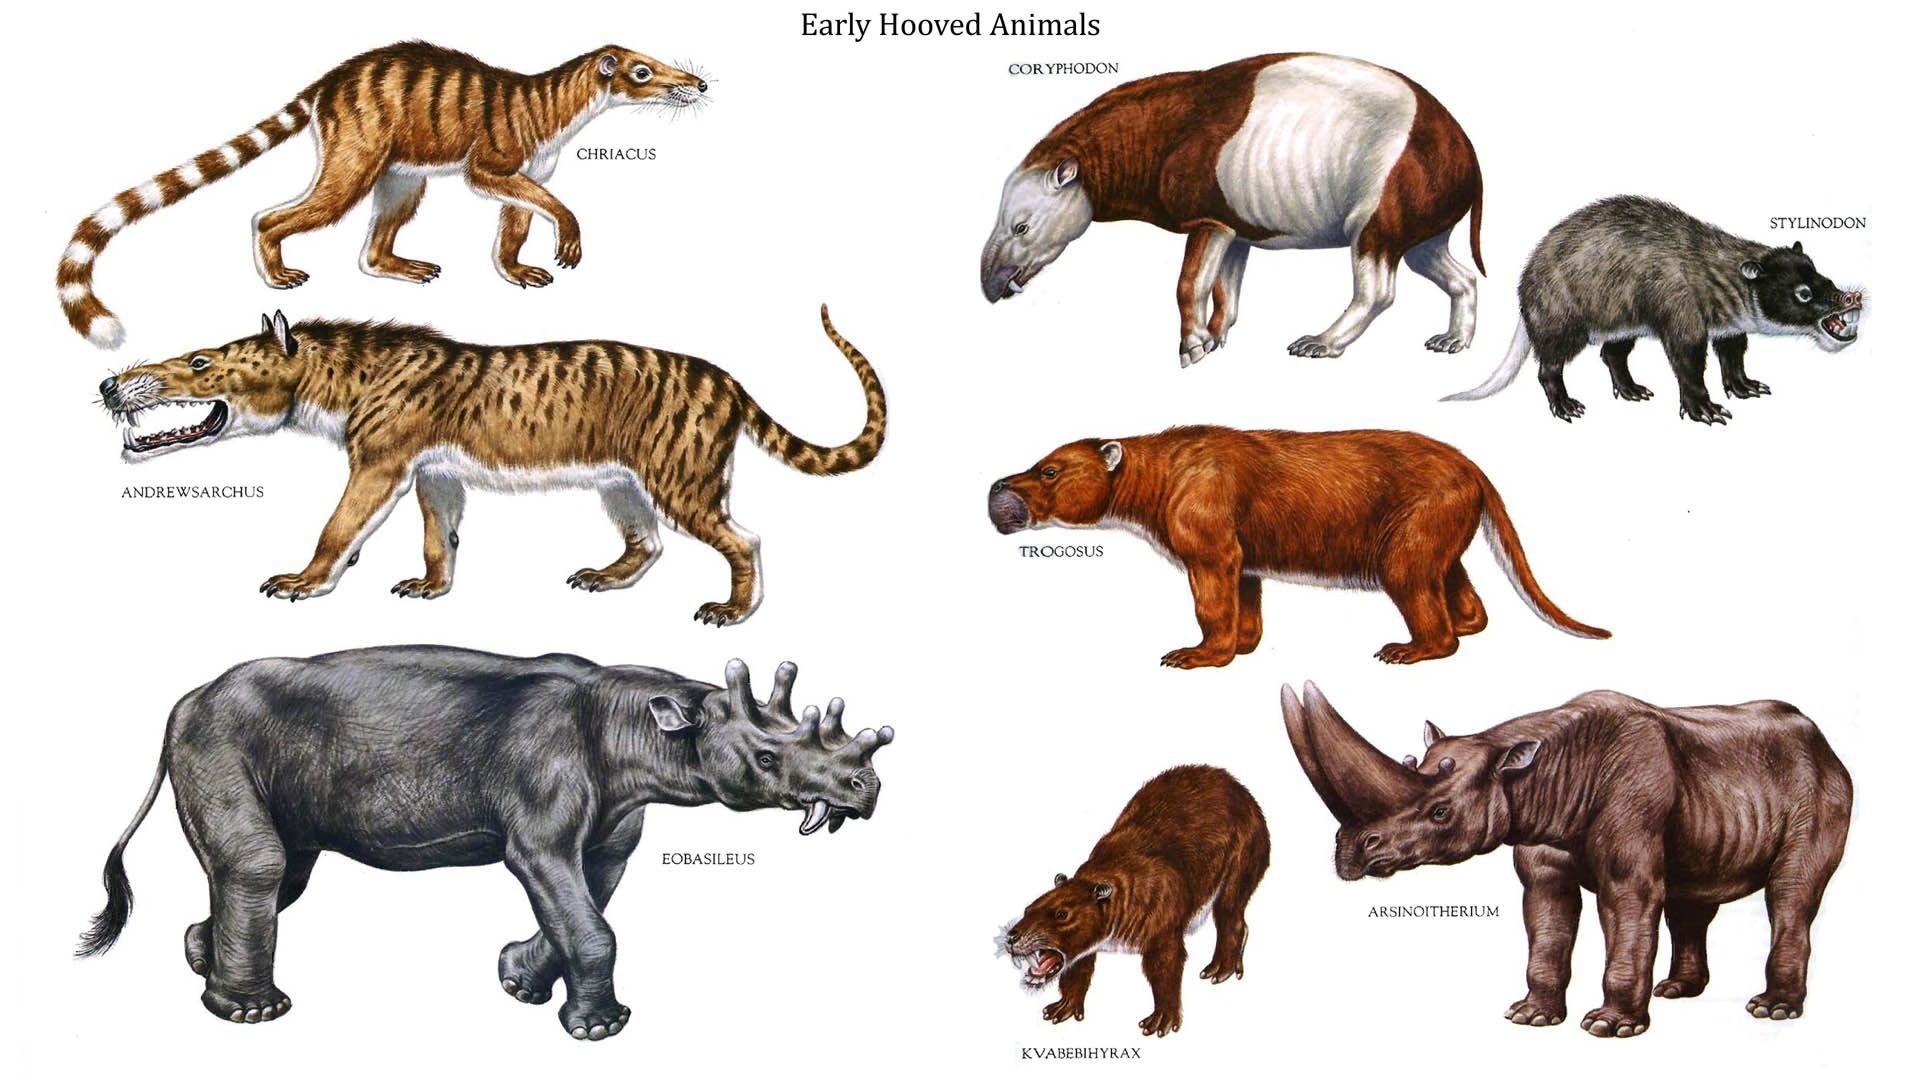 Все вымершие живут. Доисторические млекопитающие хищники. Вымершие доисторические млекопитающие. Эндрюсарх Эволюция. Предки современных животных.